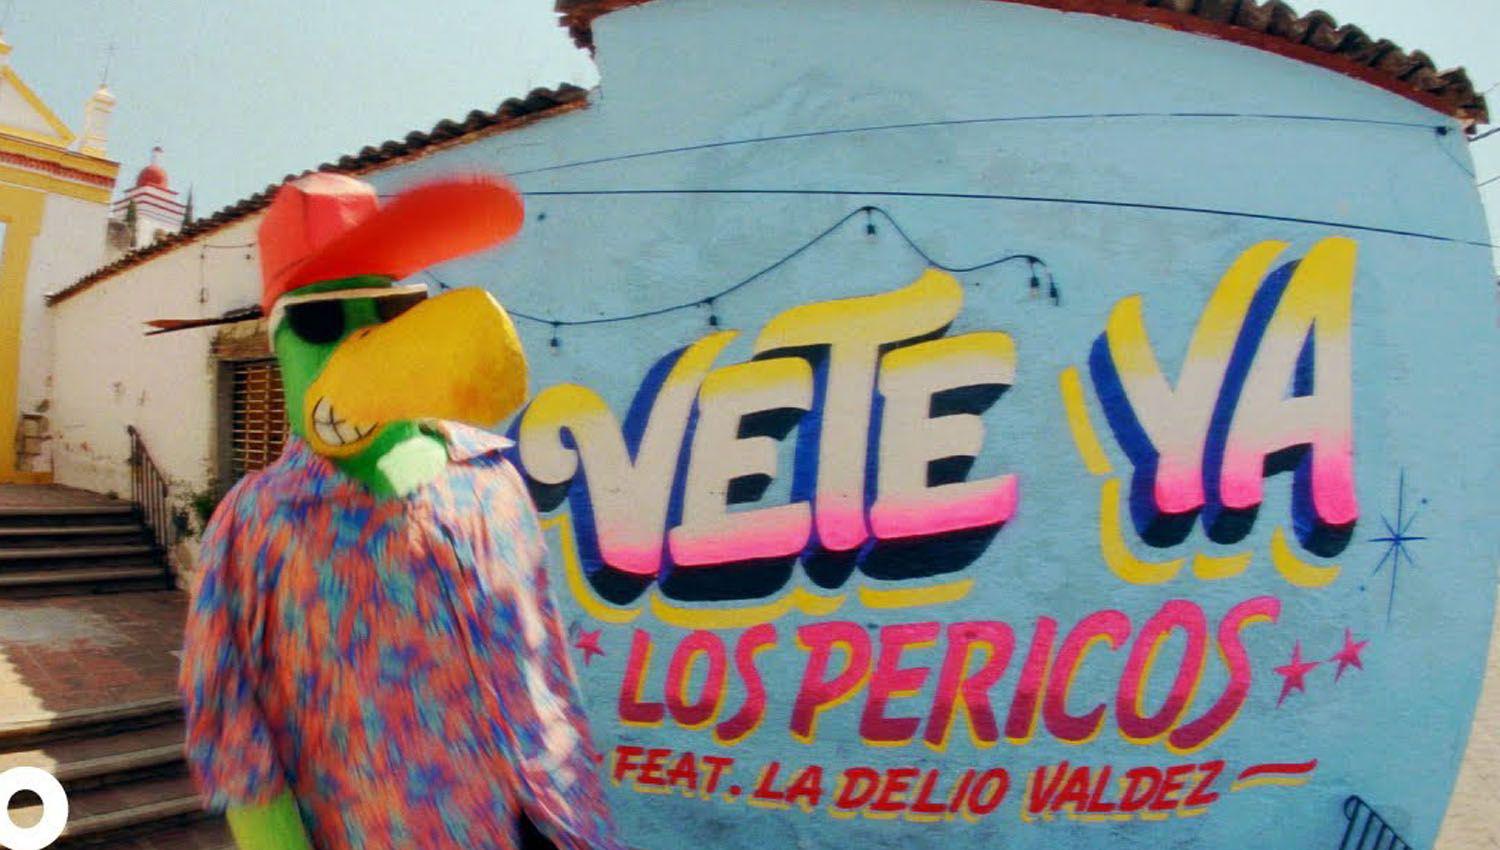 Los Pericos y la Delio Valdez en Vete ya